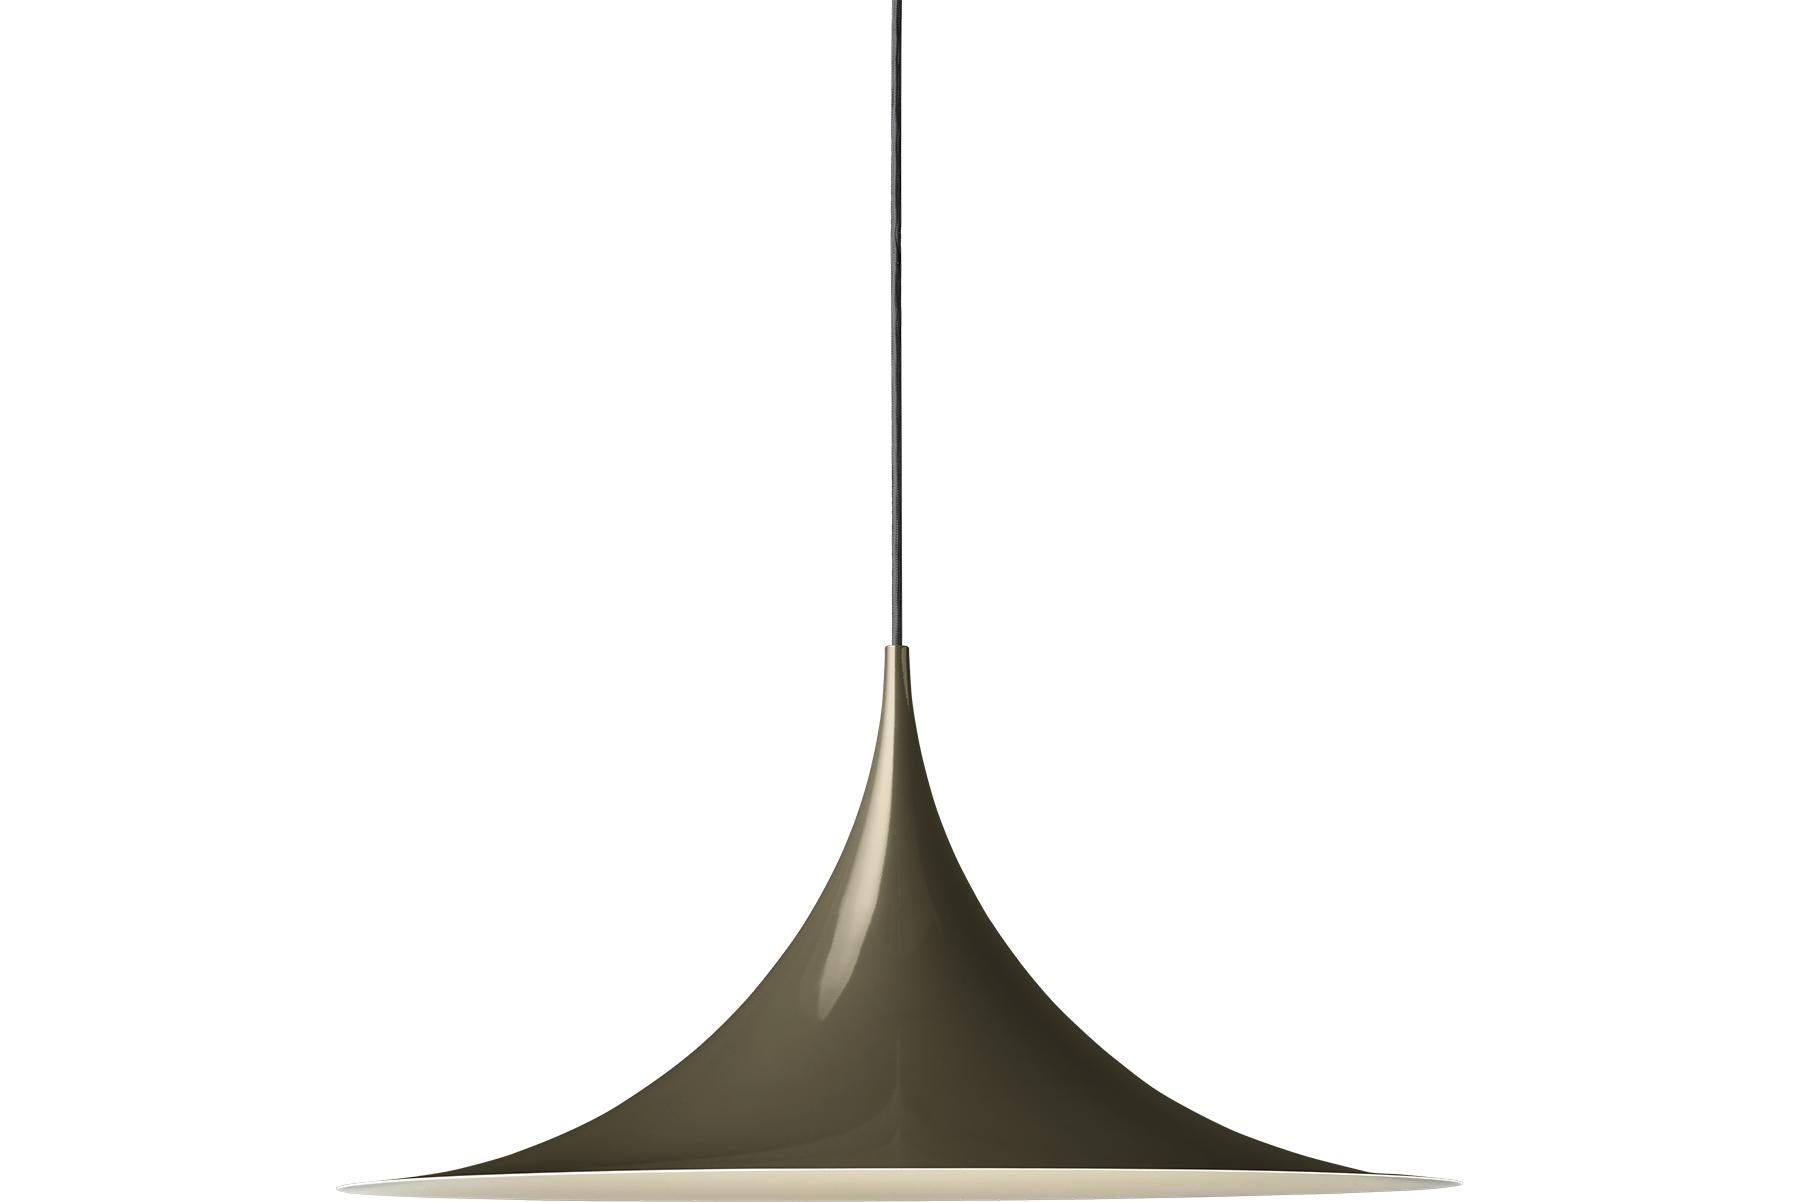 Le Semi Pendant est une lampe suspendue unique, basée sur deux quarts de cercle assemblés, dos à dos. Son abat-jour en métal émaillé en forme d'arche crée une lumière diffuse en forme de cône, idéale au-dessus d'une table à manger ou d'un plan de